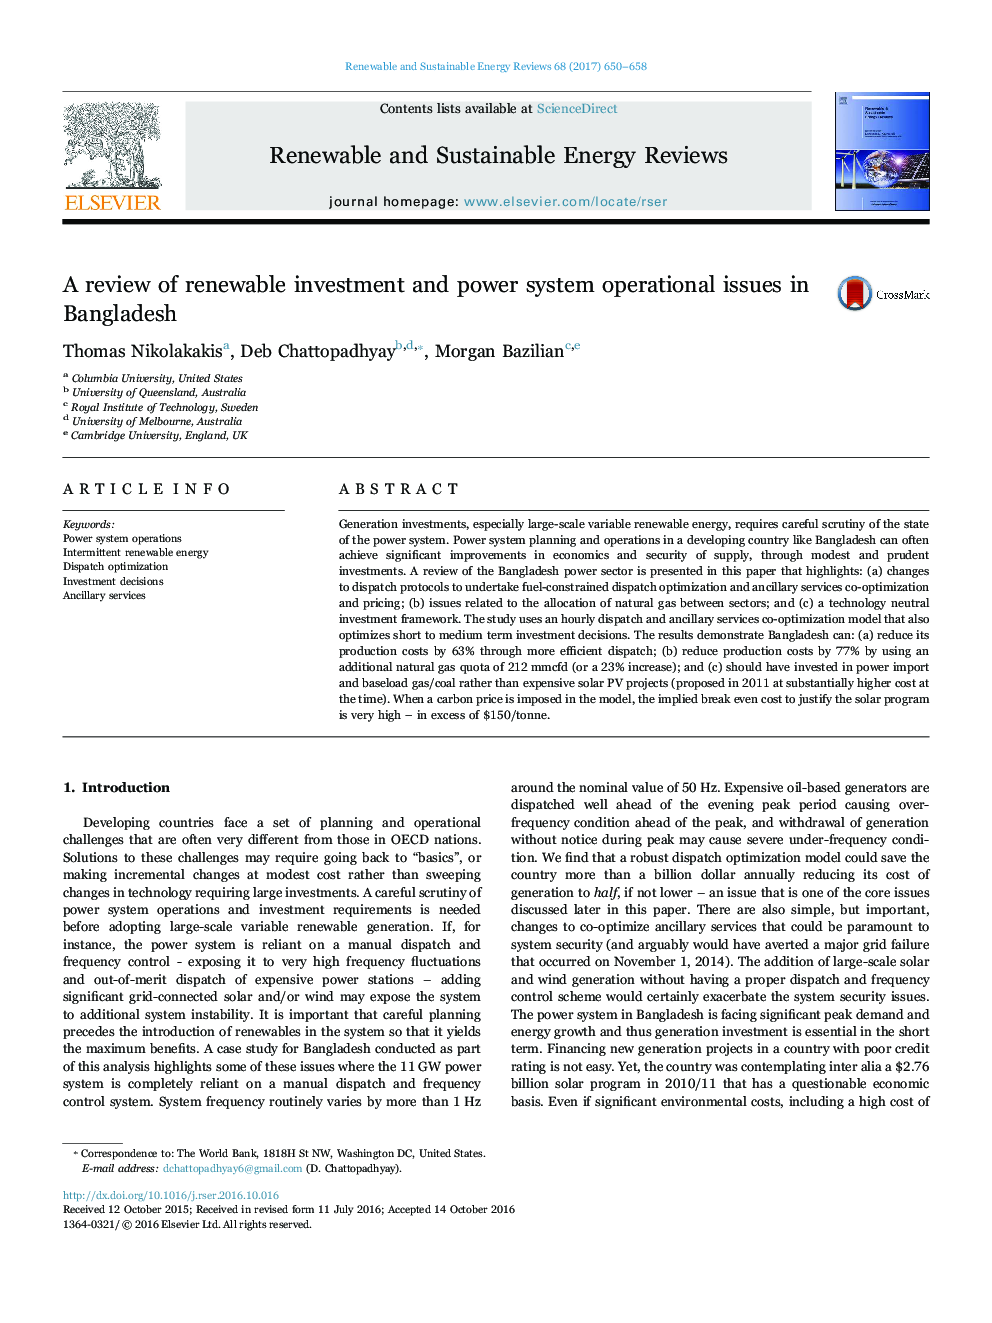 بررسی سرمایه گذاری های تجدید پذیر و مسائل عملیاتی سیستم برق در بنگلادش 